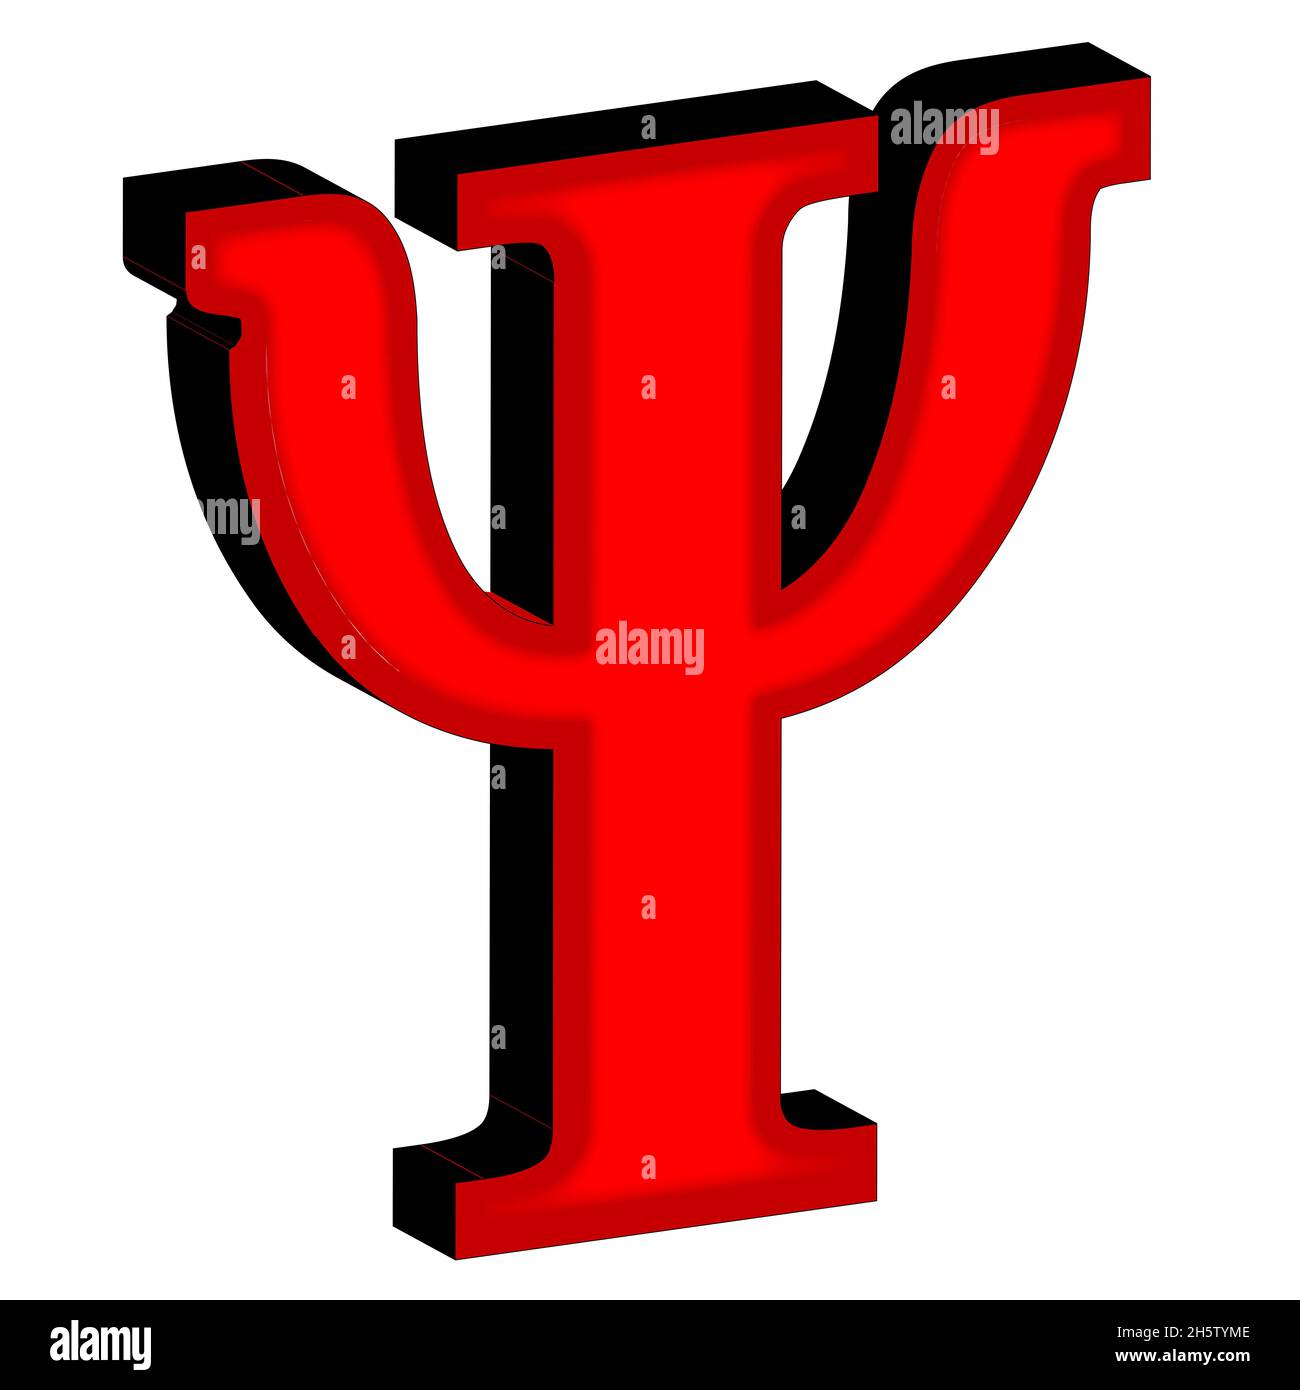 Psi- una lettera dall'alfabeto greco in 3D isolata su uno sfondo bianco. Foto Stock